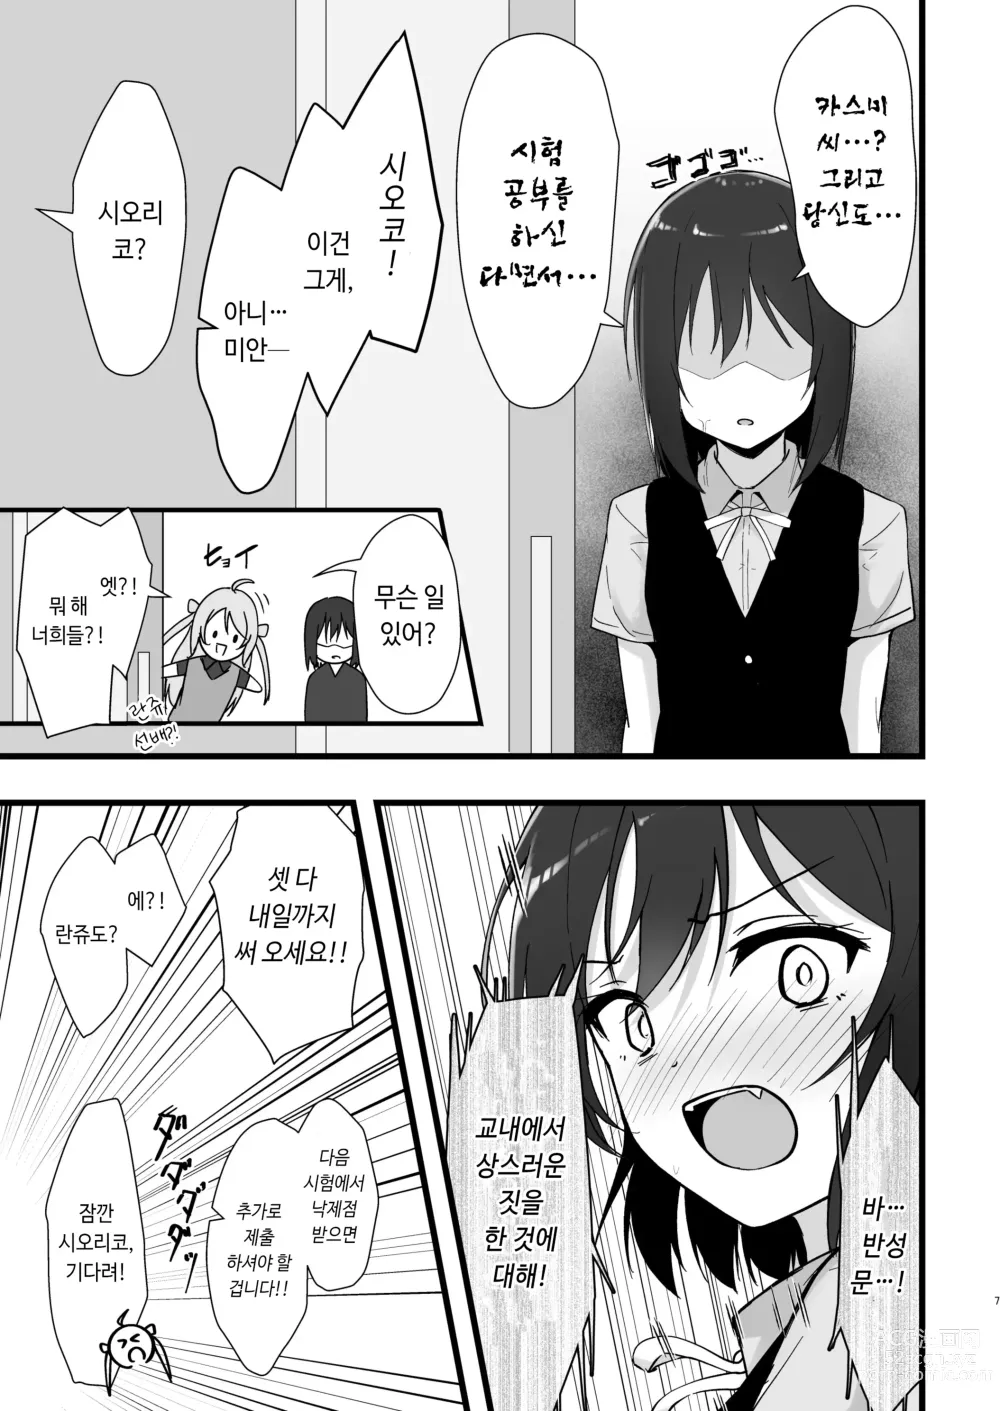 Page 6 of doujinshi 시오리코 카스미 패러다임